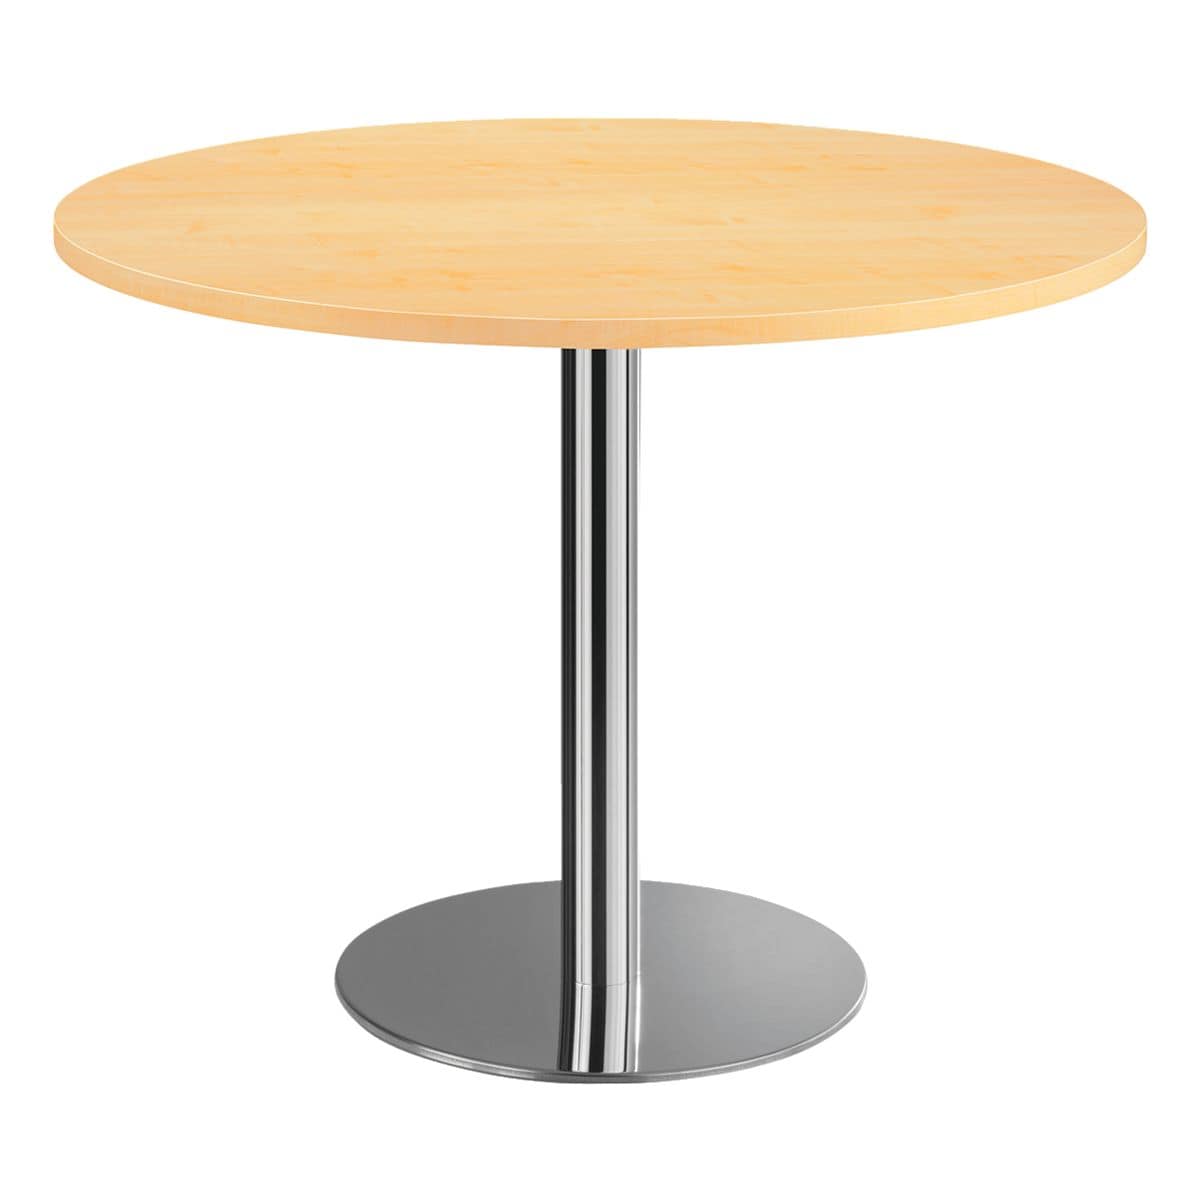 Стол высотой 100 см. Стол column d80 White. Стол Tulip d80 белый. Aro стол Берлин круглый сталь стекло, 60 x 60 x 70см. Стол барный Signal b100 d60 см.